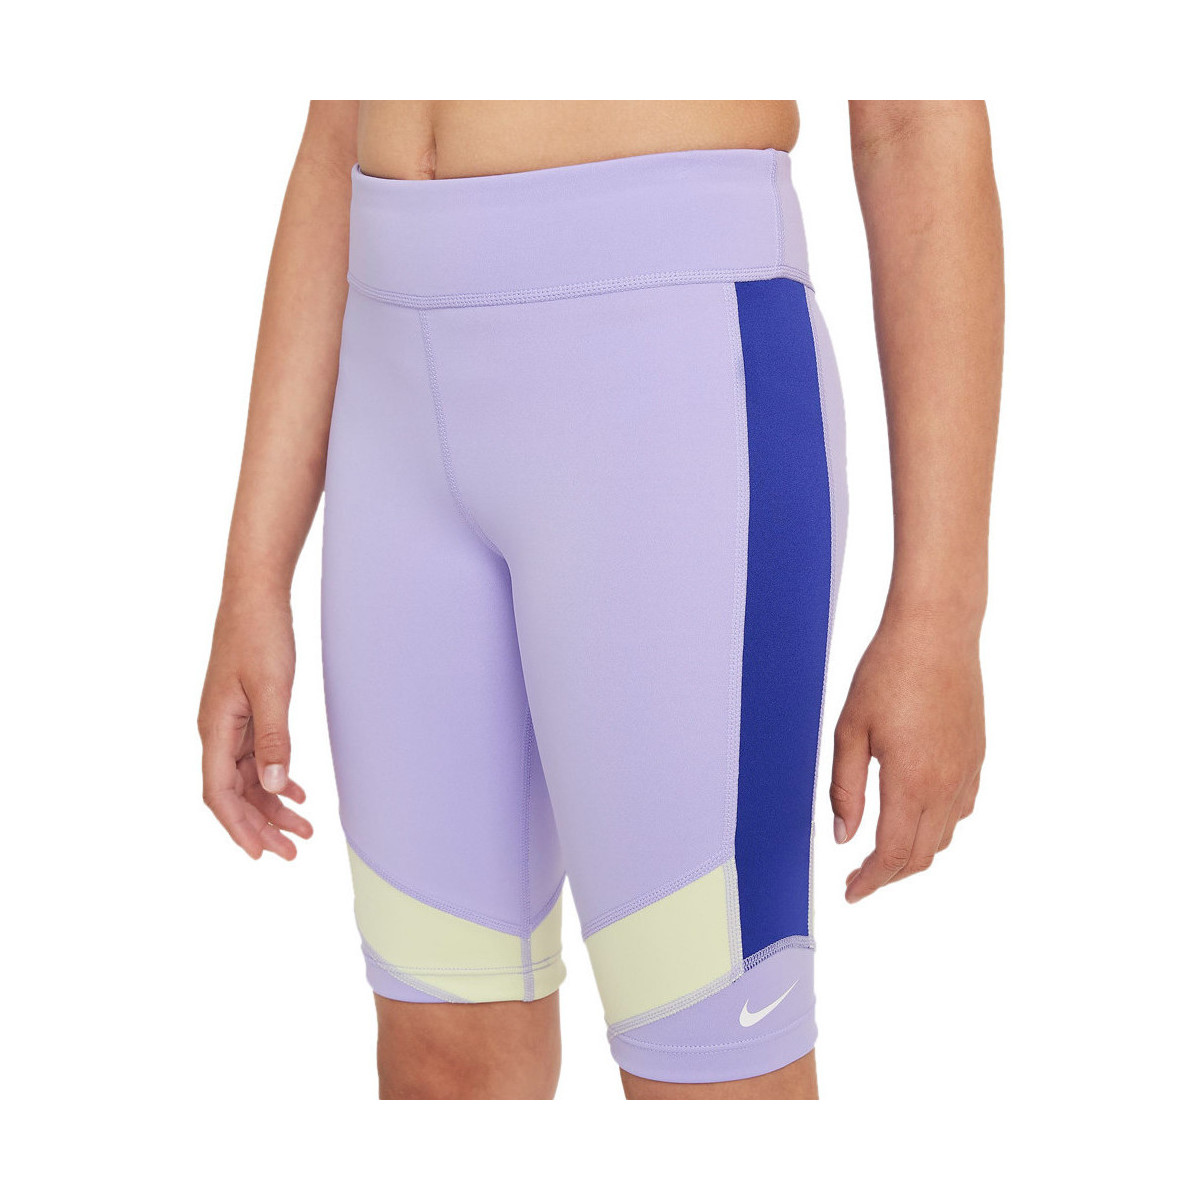 Kleidung Mädchen Shorts / Bermudas Nike DD8016-580 Violett